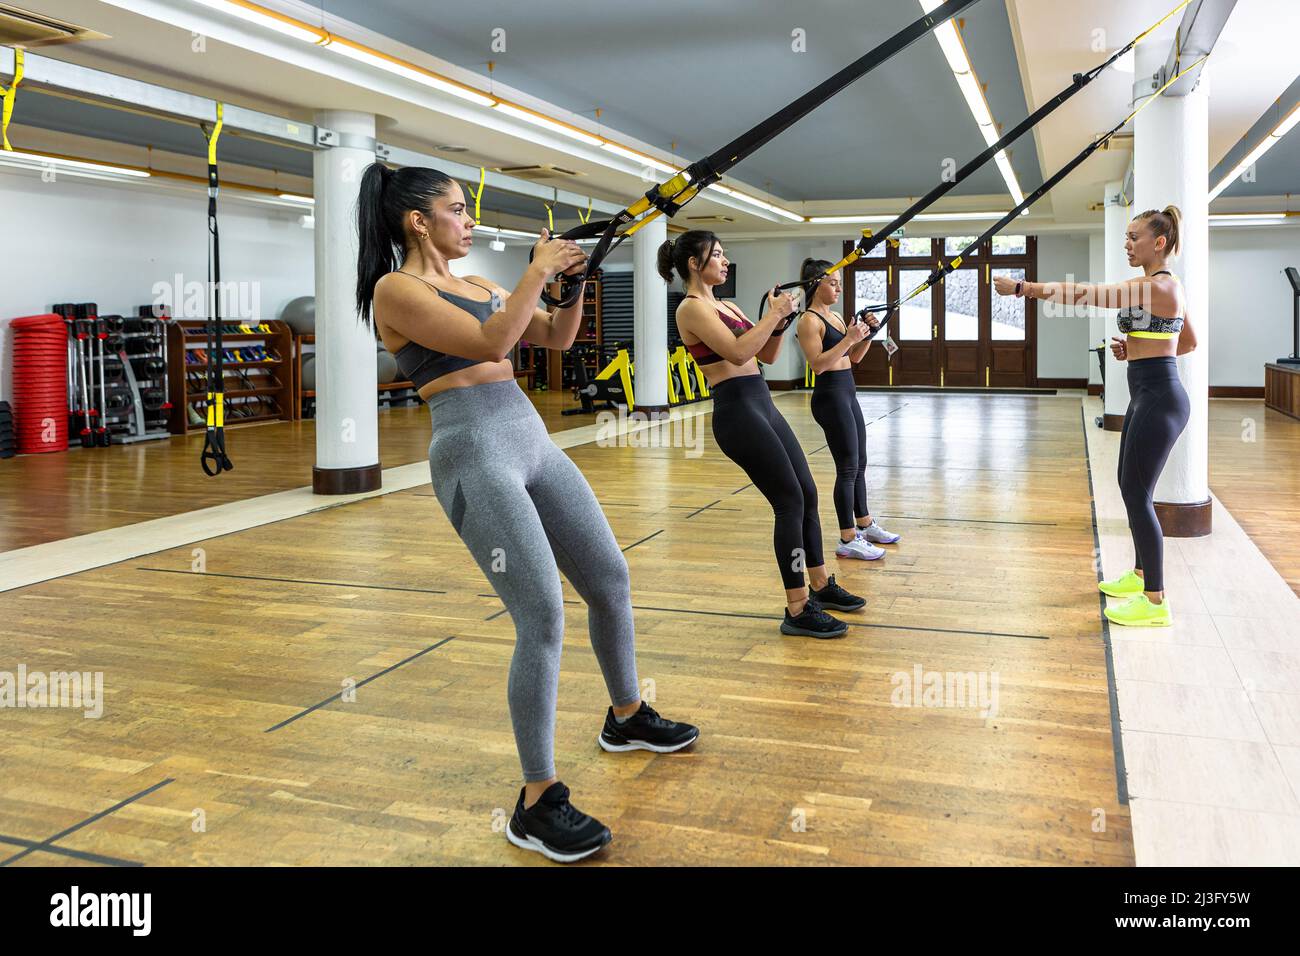 Die Trainerin erklärt Sportlerinnen, die während des Aufhängetrainings in einem geräumigen, leichten Fitnessstudio an TRX-Seilen hängen, die Übungen Stockfoto